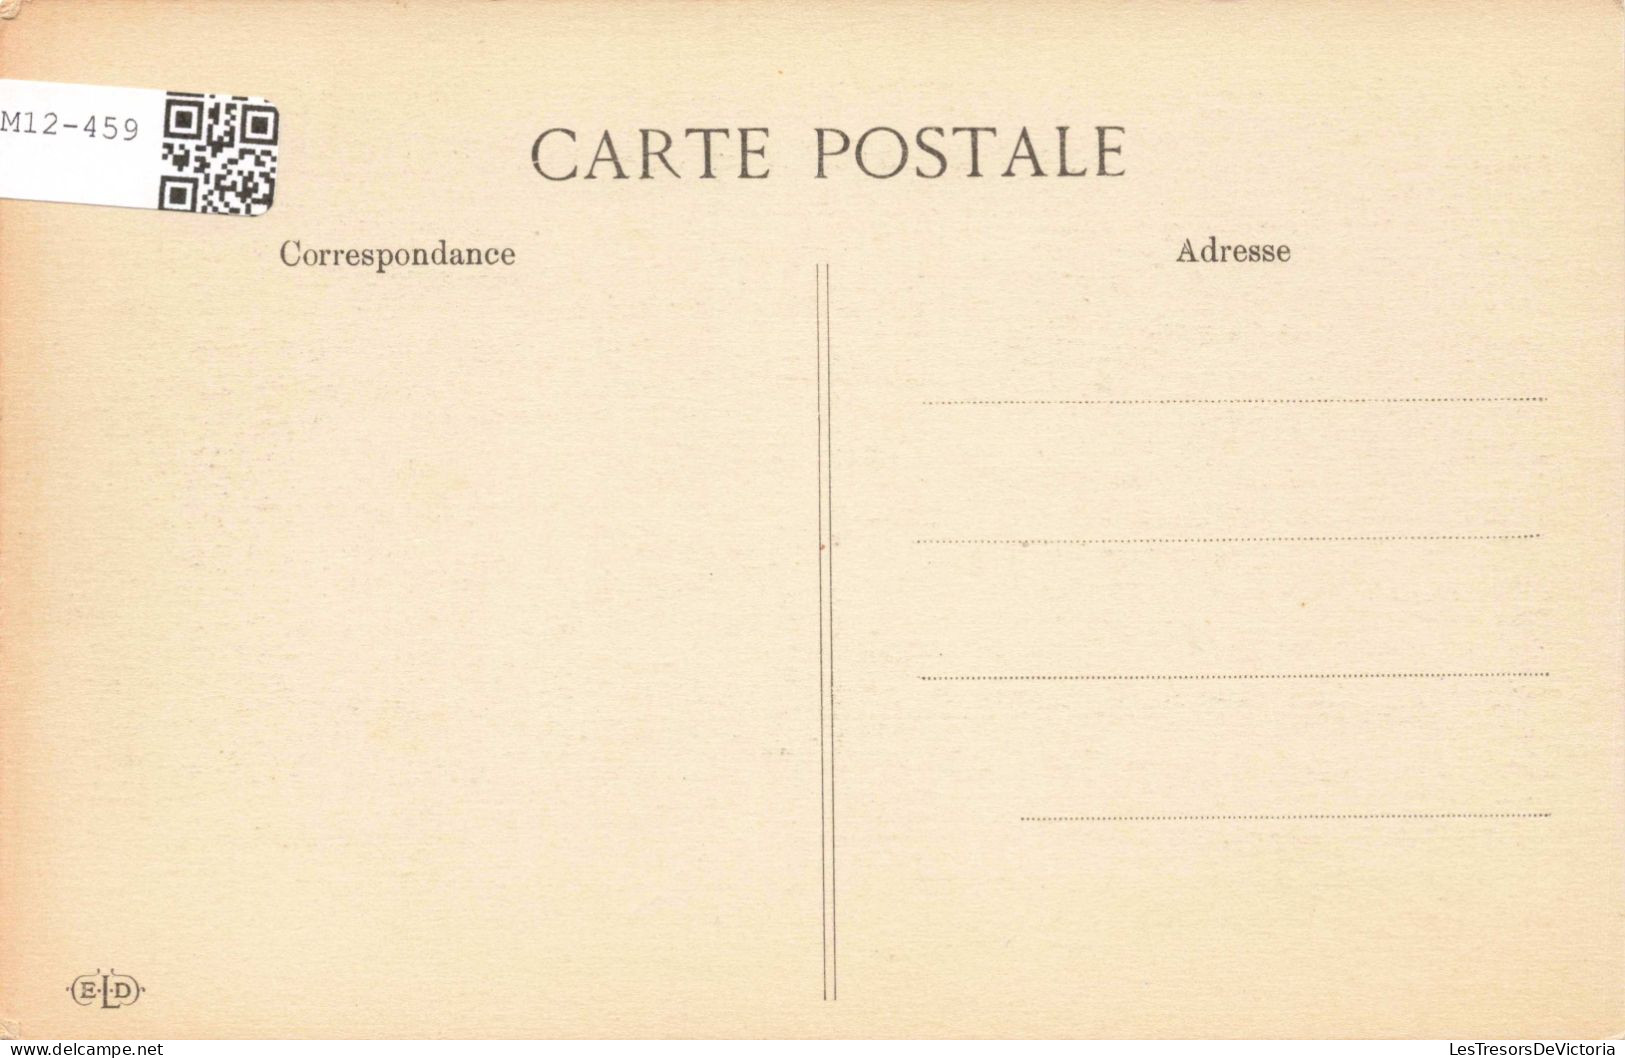 HISTOIRE - Les Adieux De Fontainebleau 1814 - Carte Postale Ancienne - Geschichte